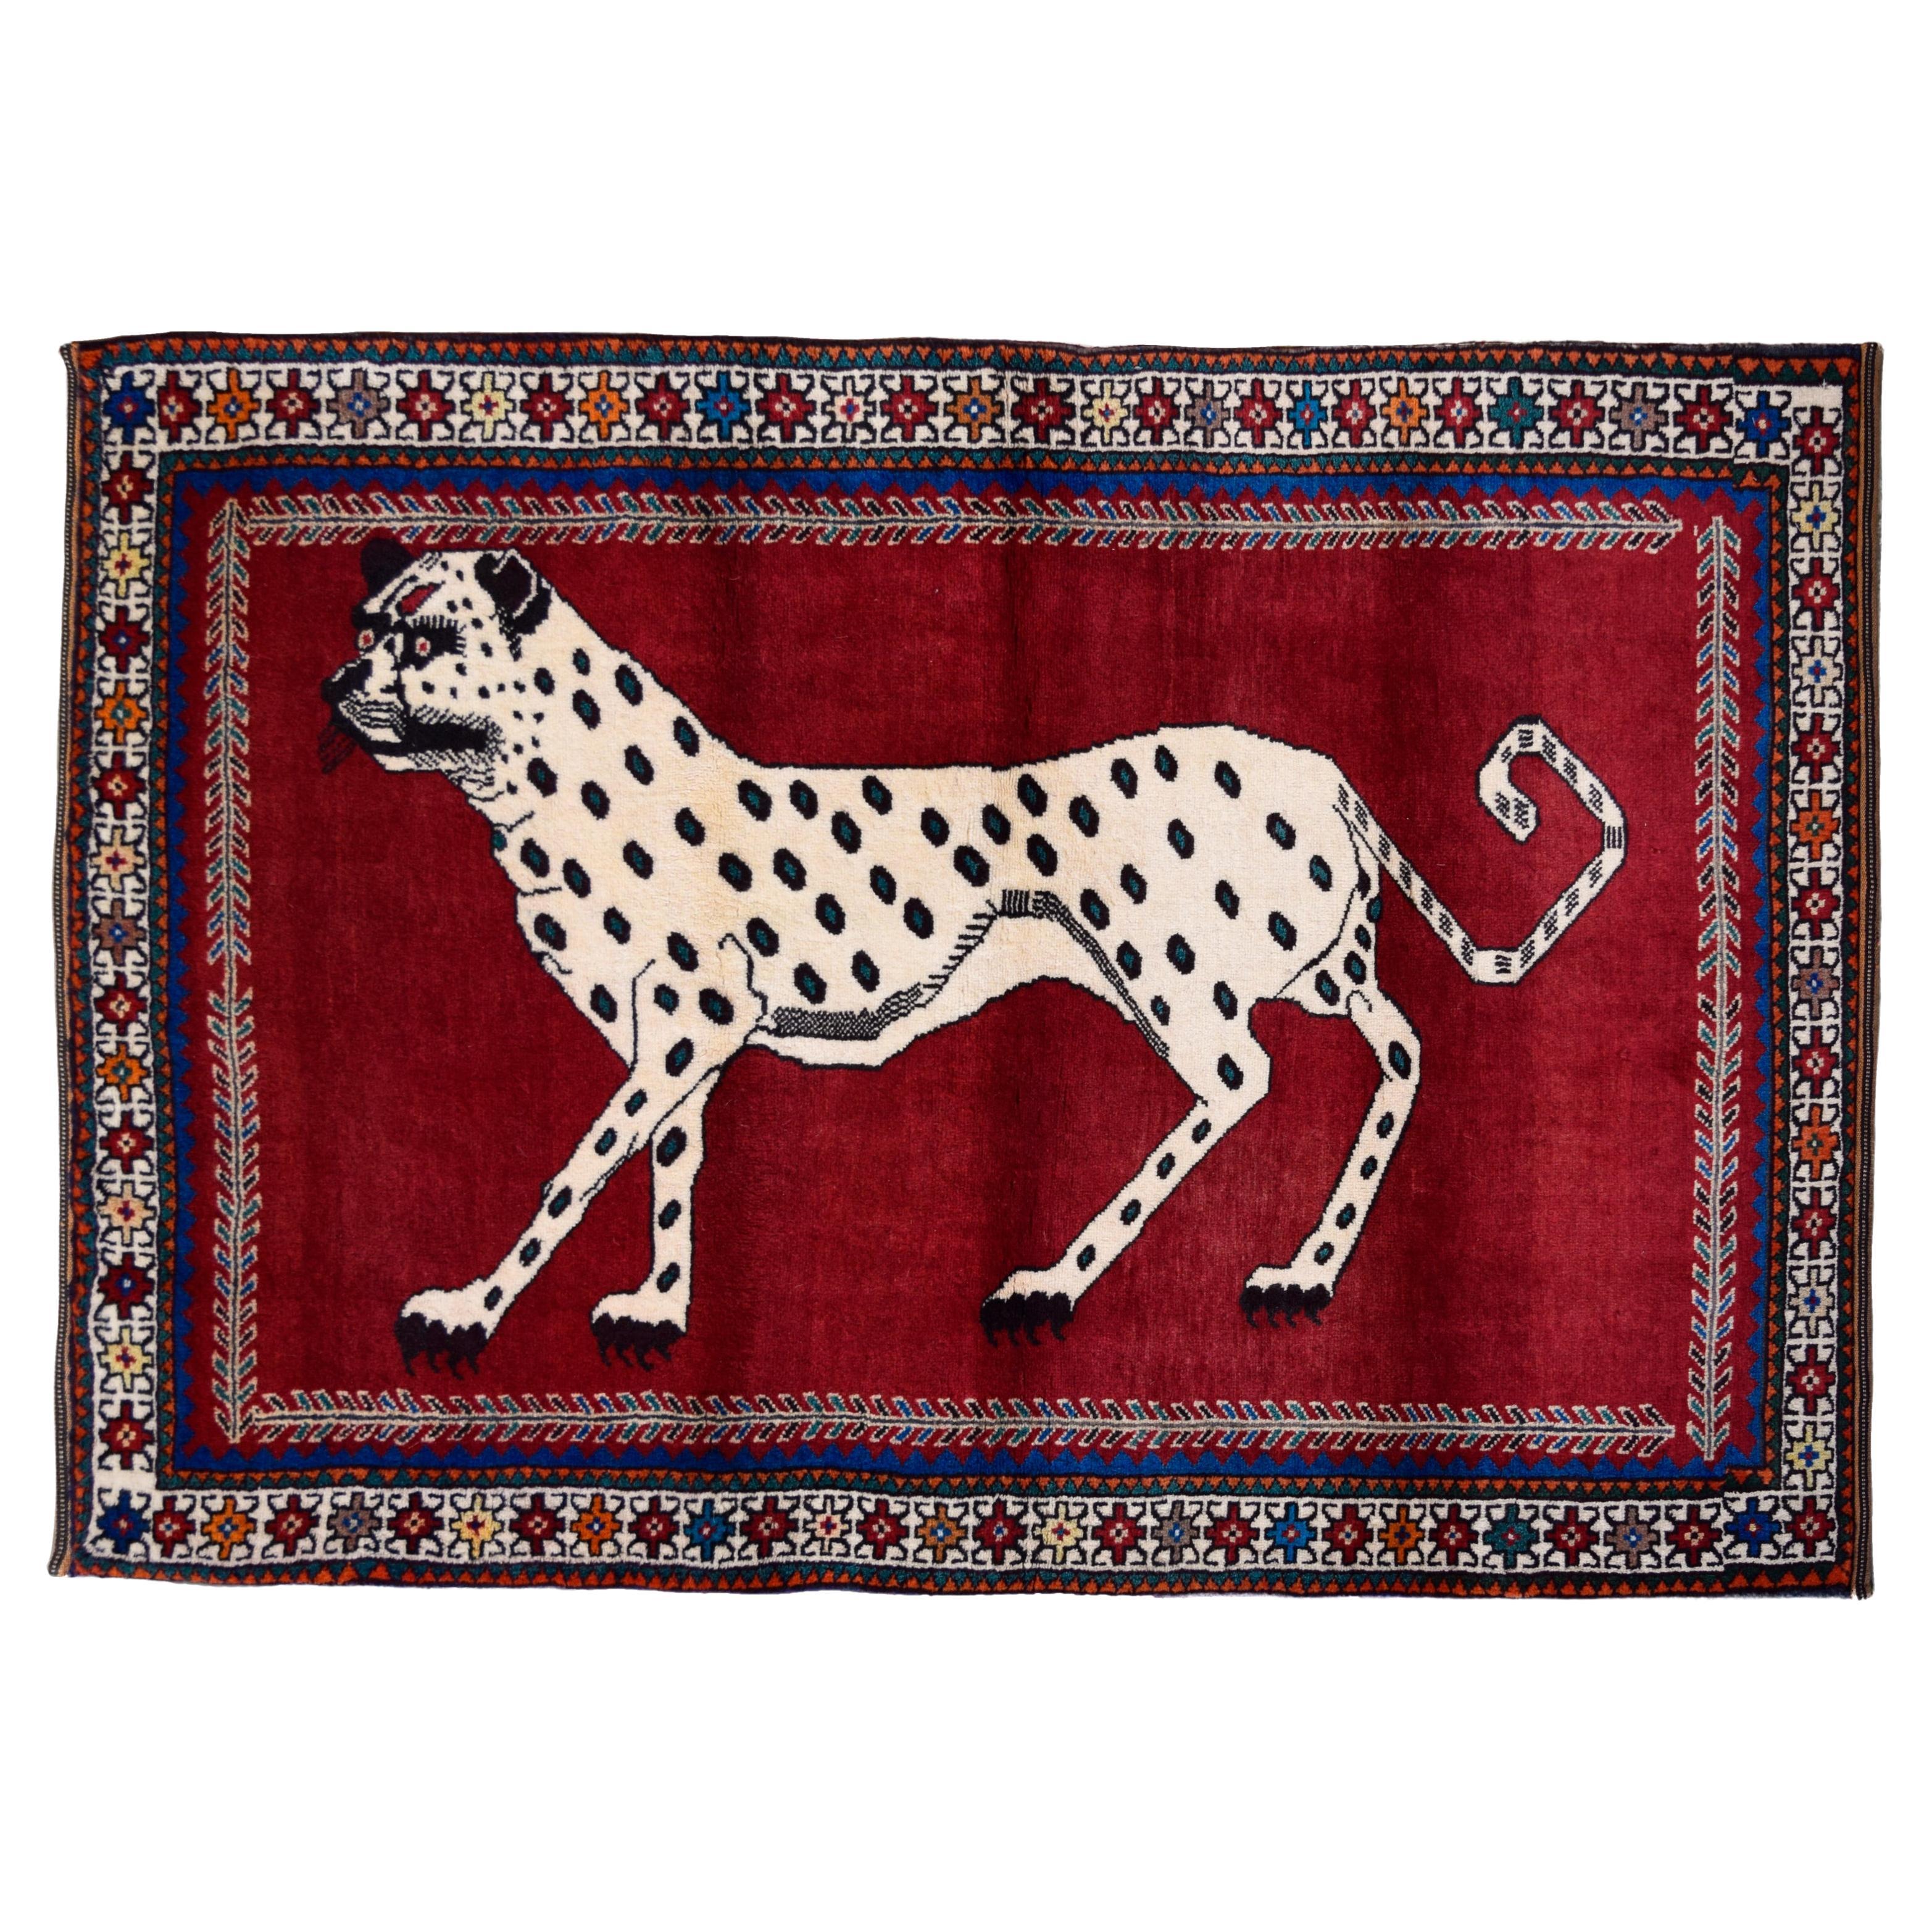 Wolle, Handgeknüpft Persisch Qashqai Leopard Teppich, Rot, Brown, Creme, 4' x 6'